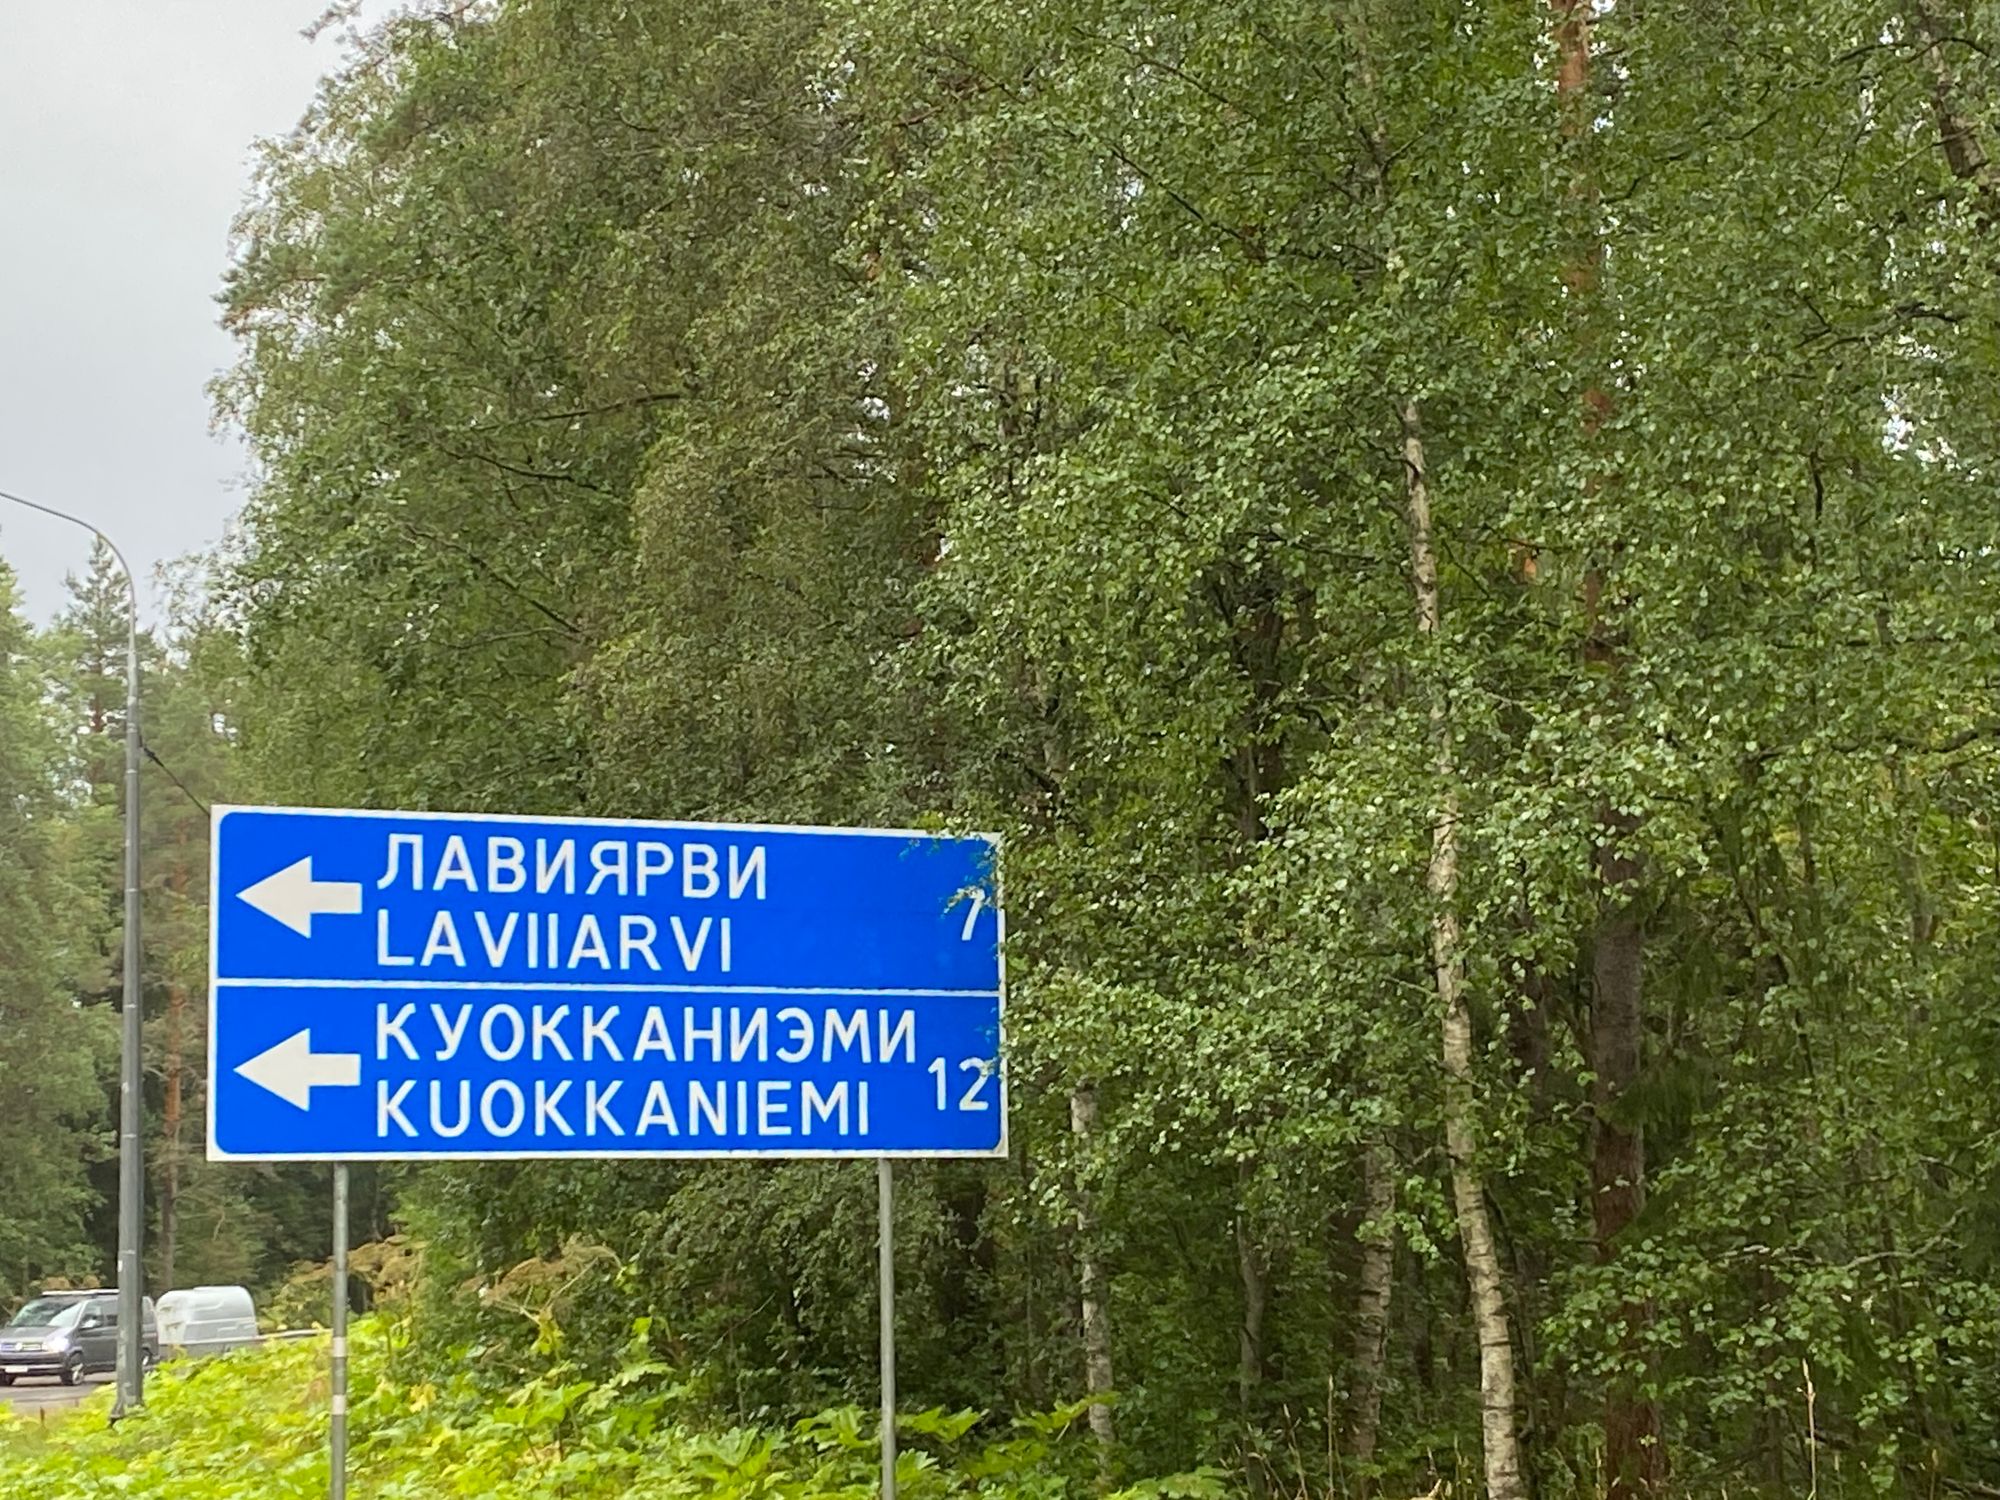 Karelia and Lake Ladoga